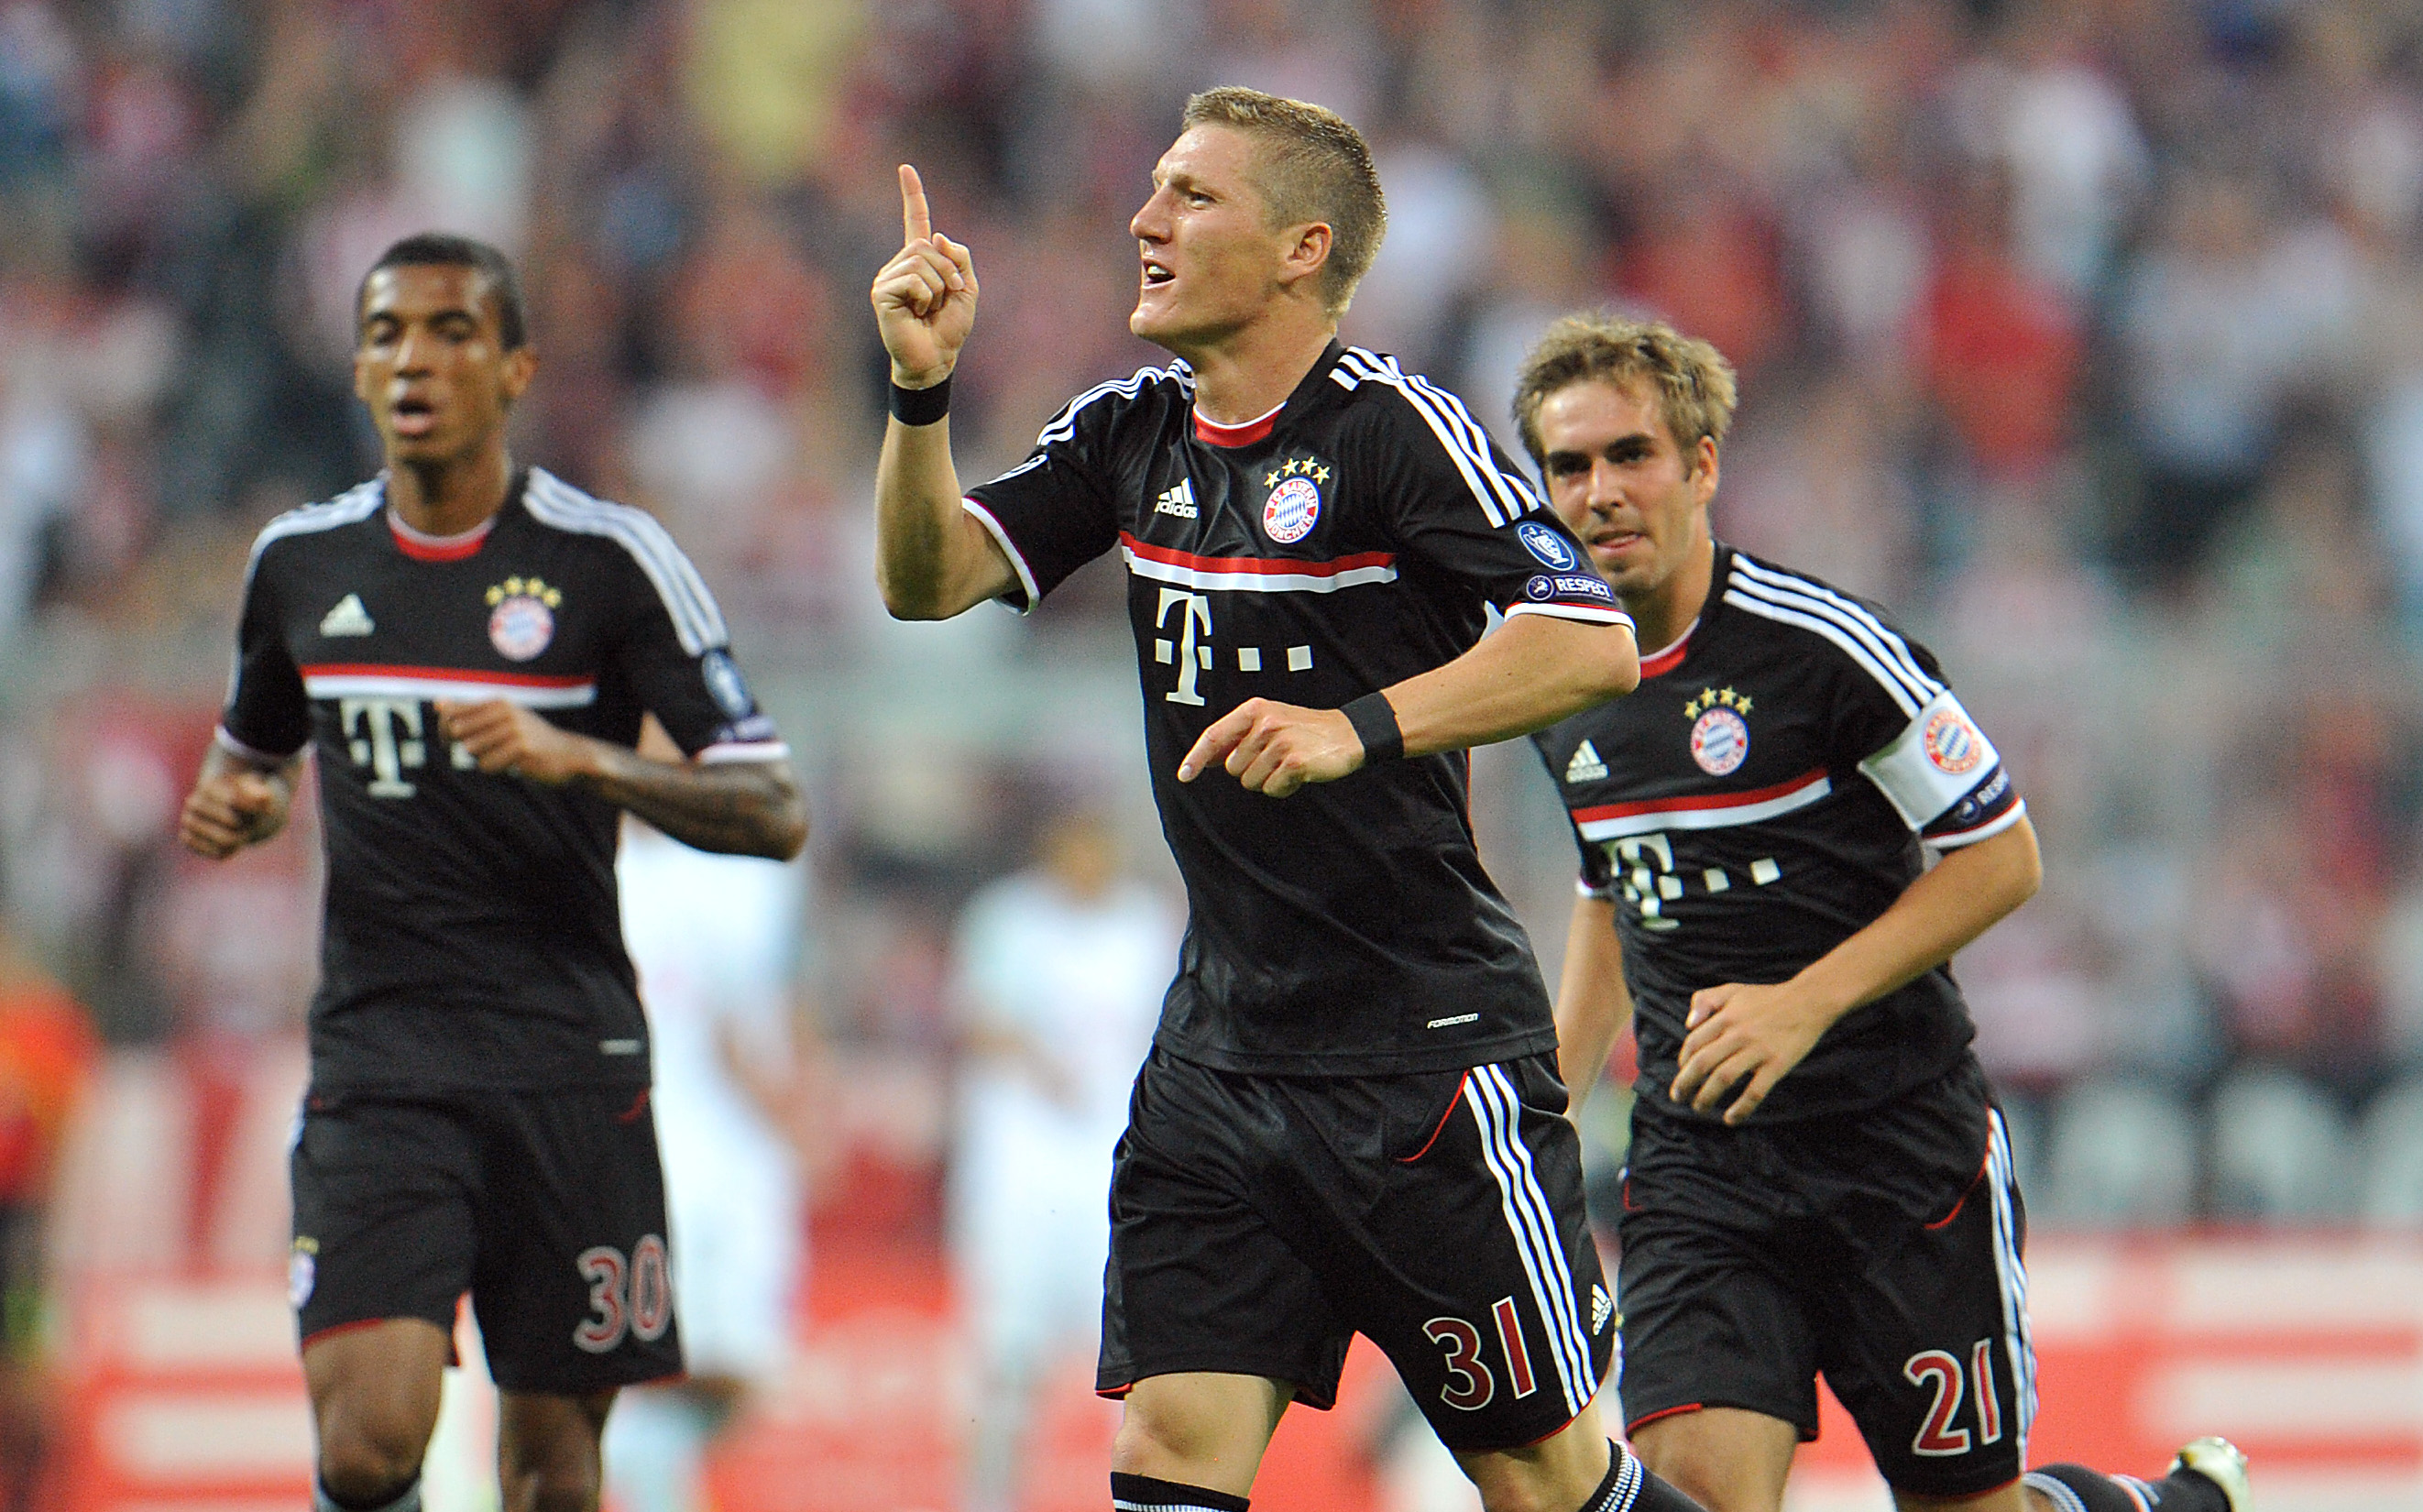 De tyska jättarna Bayern München fick kvala mot schweiziska Zürich för att ta sig till gruppspelet i Champions League.